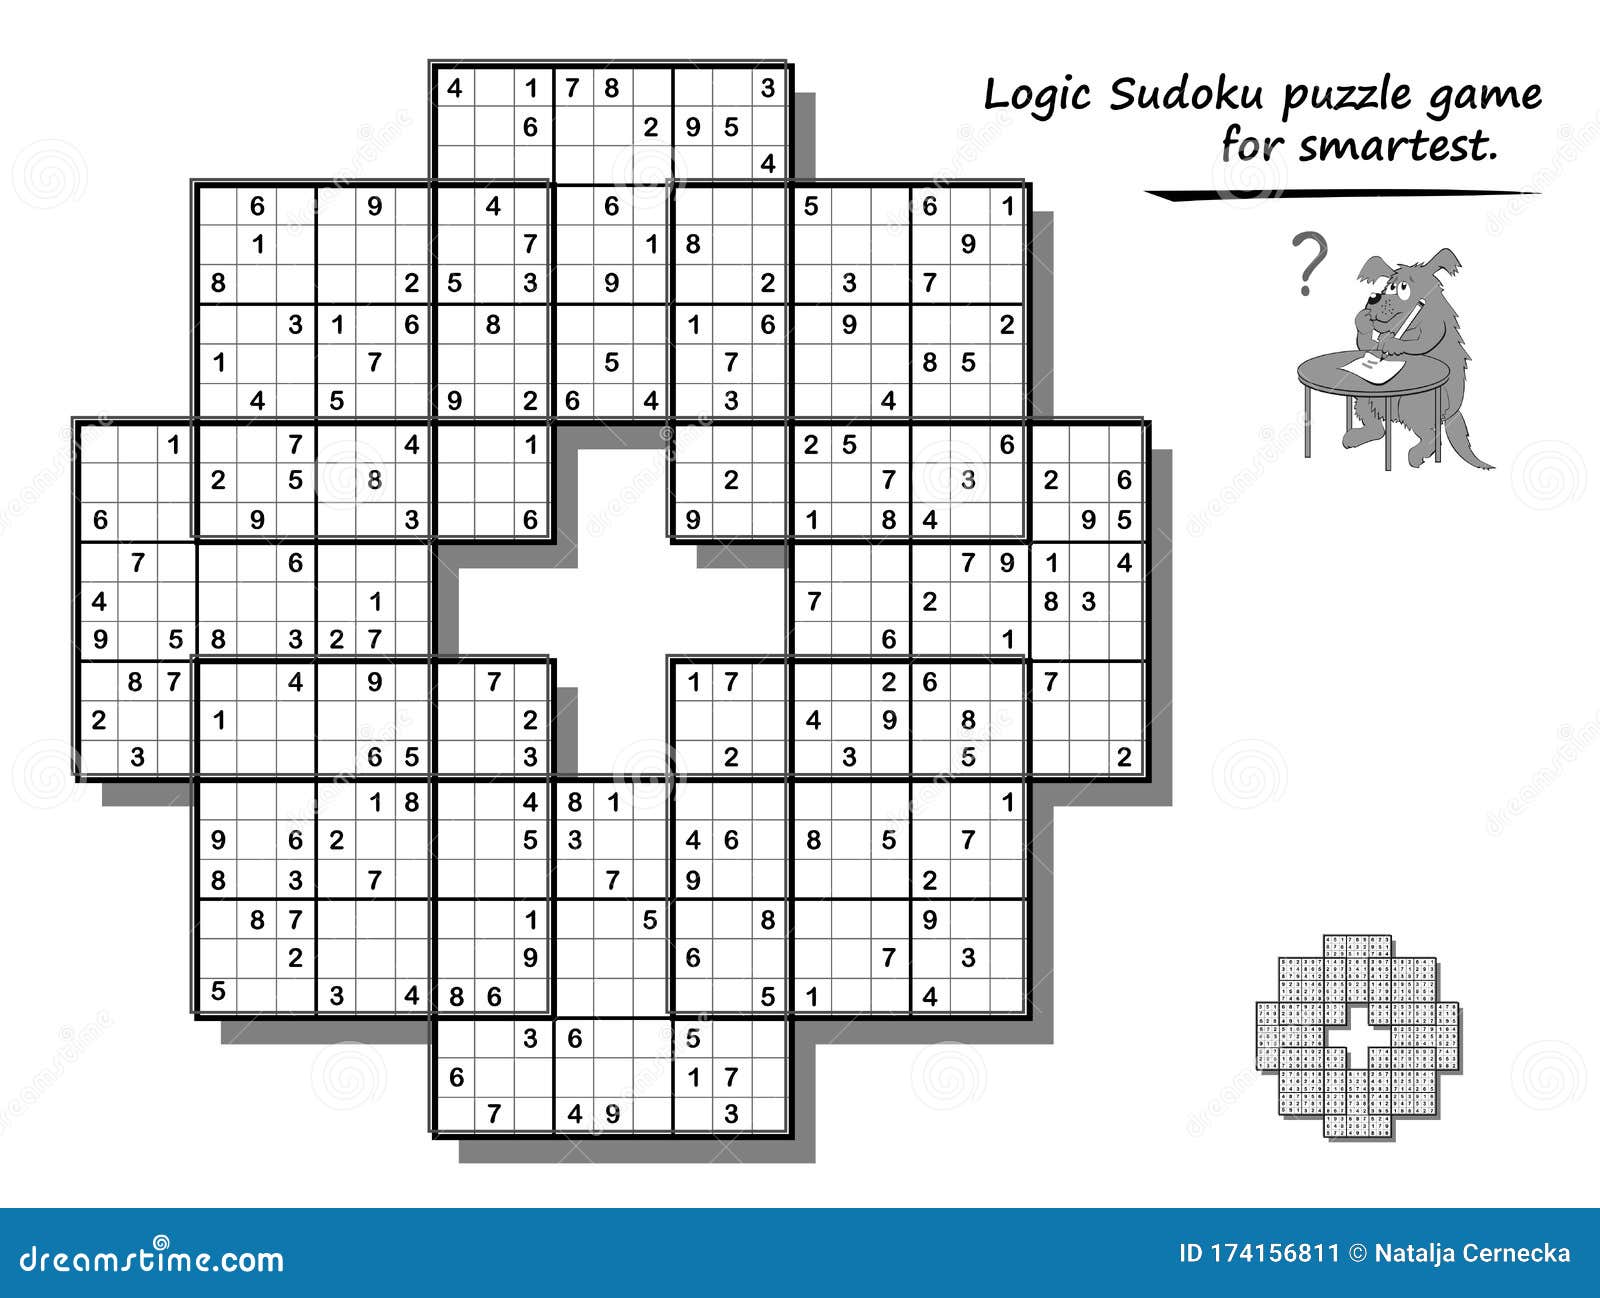 Gioco Jogos Criativos - Mais uma encomenda pronta. O Sudoku é um jogo que  envolve raciocínio e lógica. No jogo tradicional a ideia é completar as 81  células usando números de 1